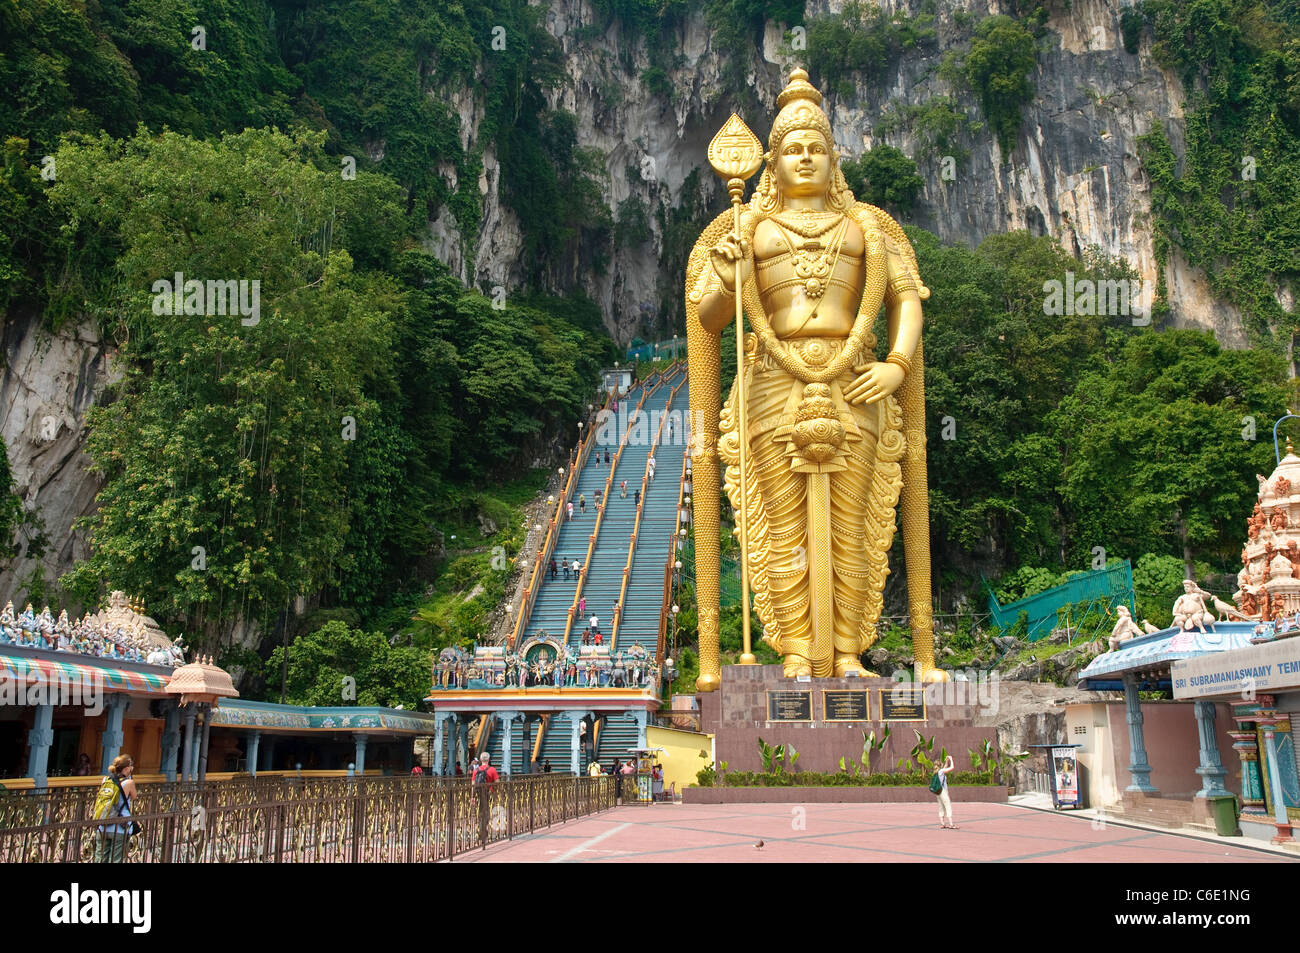 Statue des Gottes Murugan am Bahnhofsvorplatz die Batu-Höhlen, Grotten Kalkstein in der Nähe von Kuala Lumpur, Malaysia Stockfoto